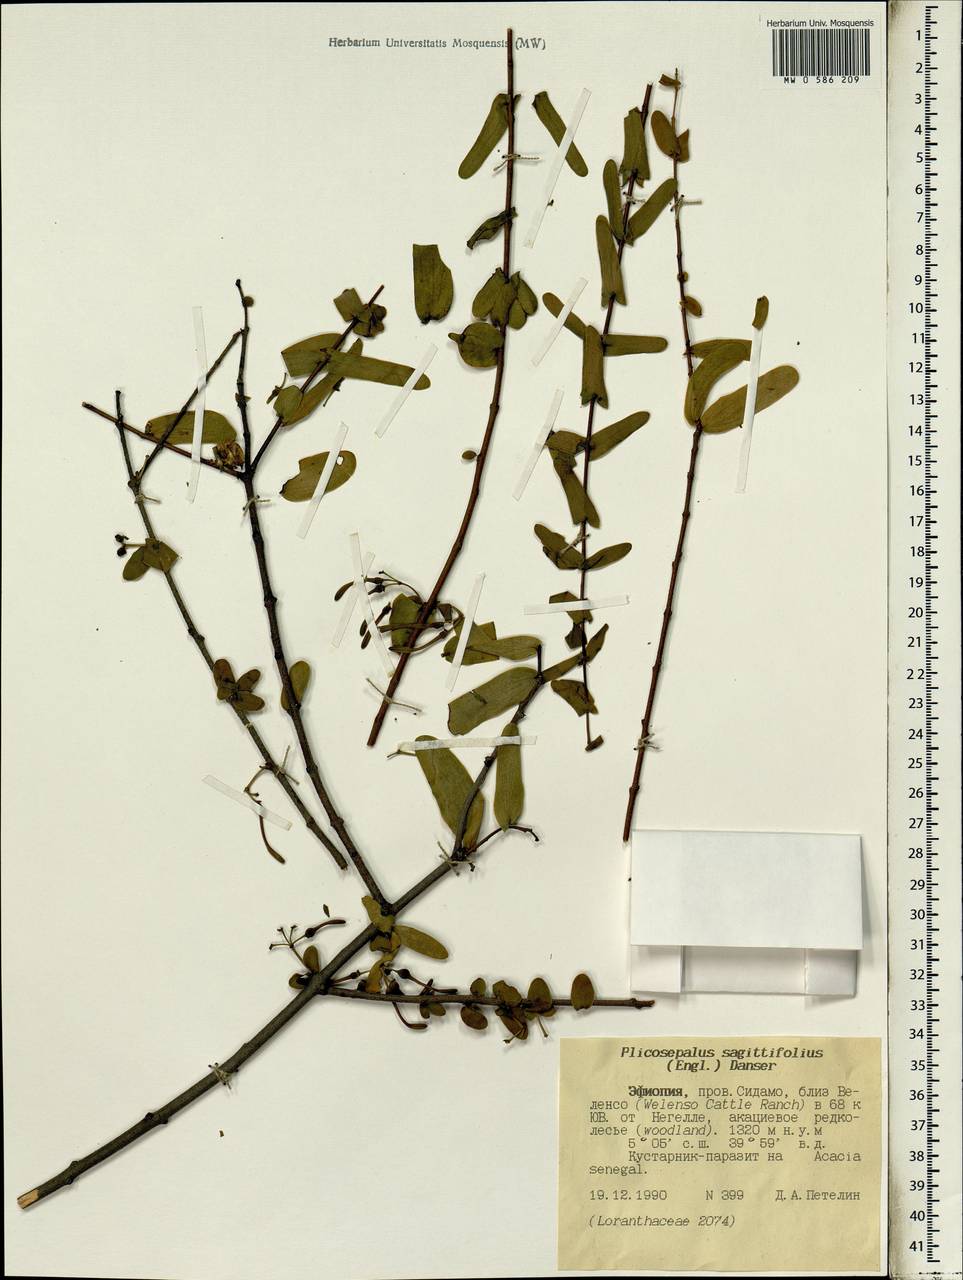 Plicosepalus sagittifolius (Sprague) Danser, Африка (AFR) (Эфиопия)